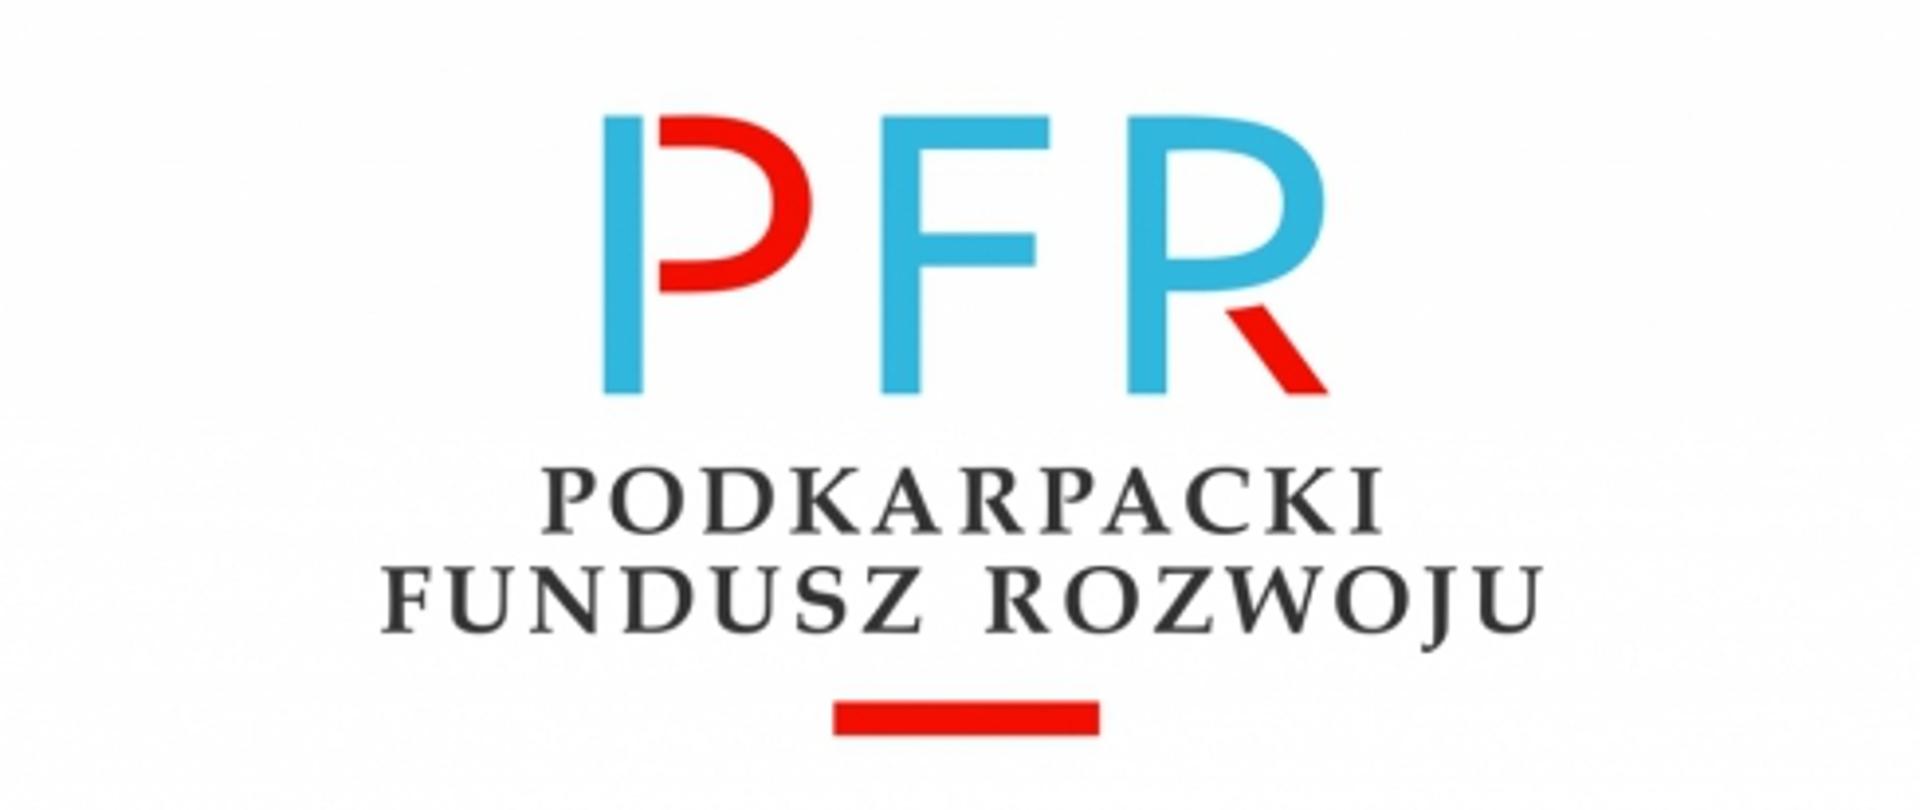 logo czerwono niebieskie litery PFR na białym tle